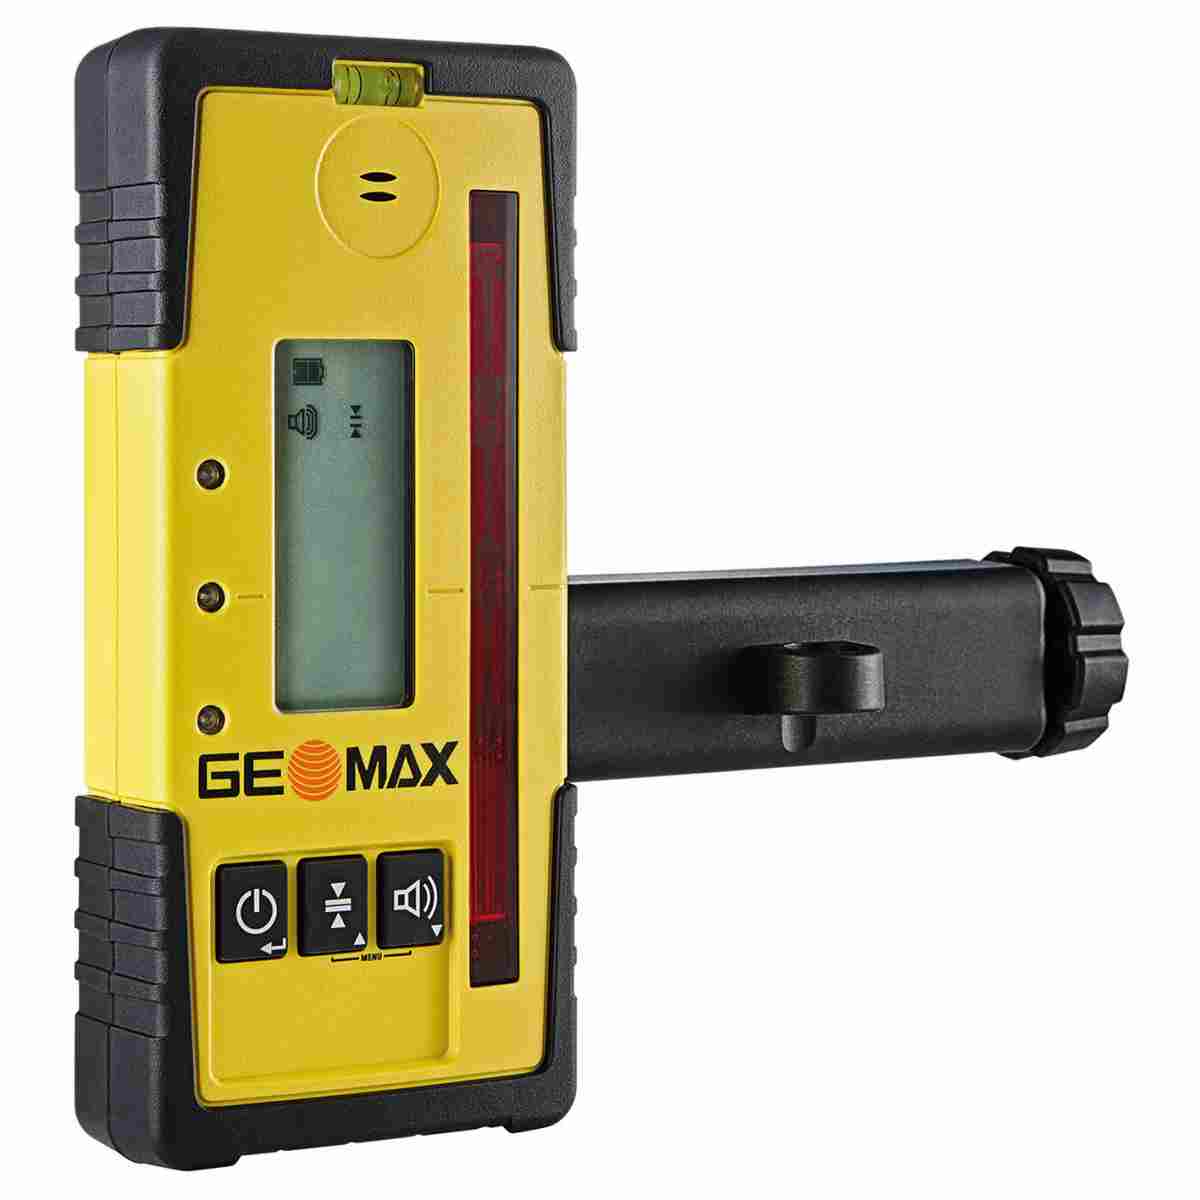 Handempfänger ZRD105B für Geomax Zone Laser mit Halter, Strahlfang u. Arretierung für Zone60DG